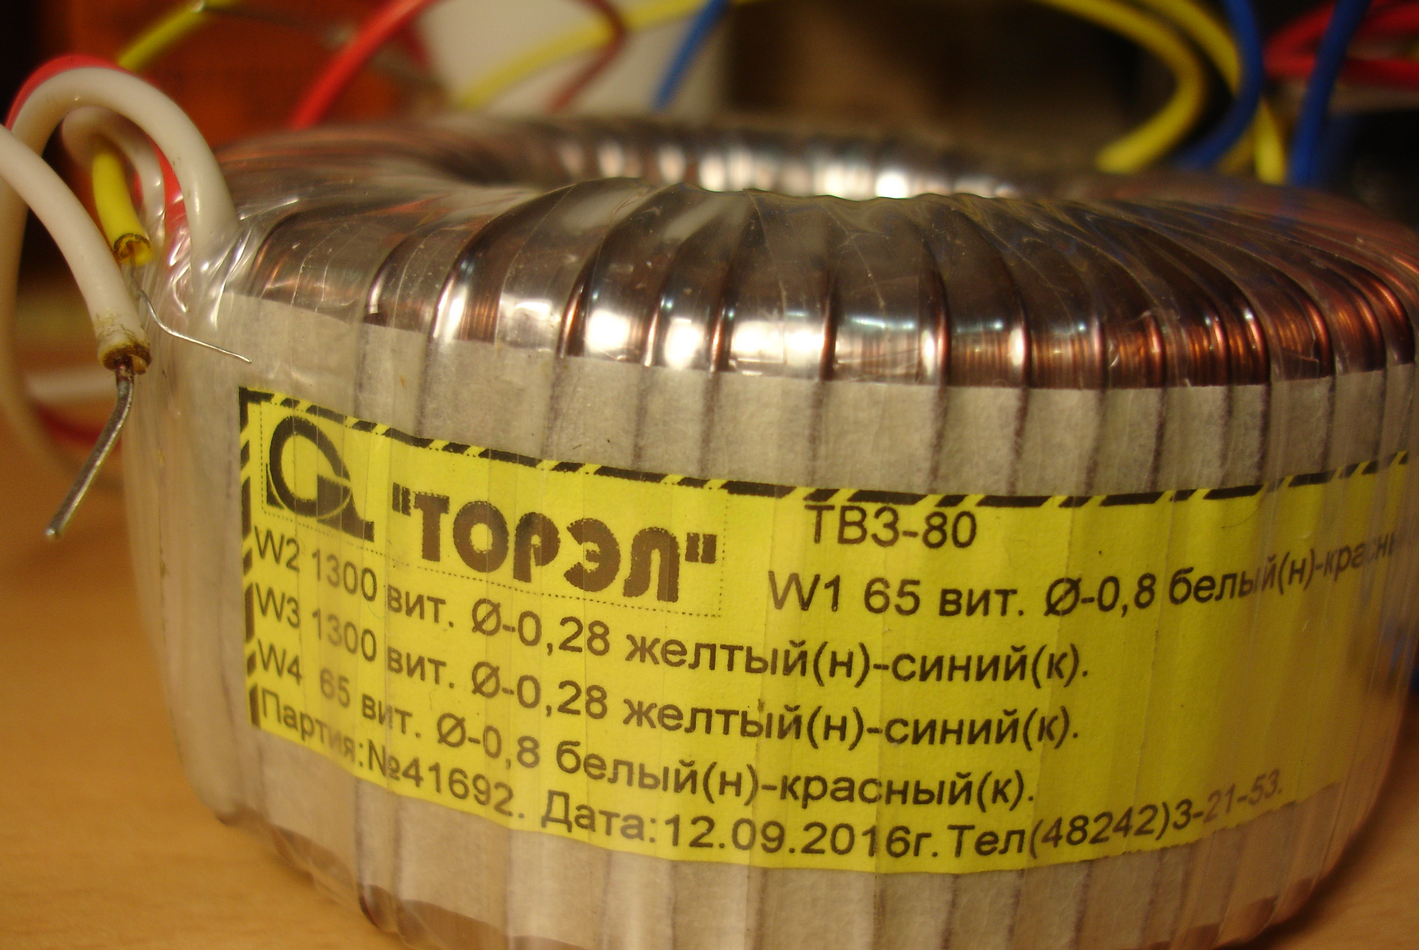 Анодный трансформатор. Трансформатор ТВЗ 80. Трансформаторы Торэл-80 для лампового усилителя. Тороидальный трансформатор Торэл ТВЗ-80 (1). Тороидальный трансформатор ТС-600-1.